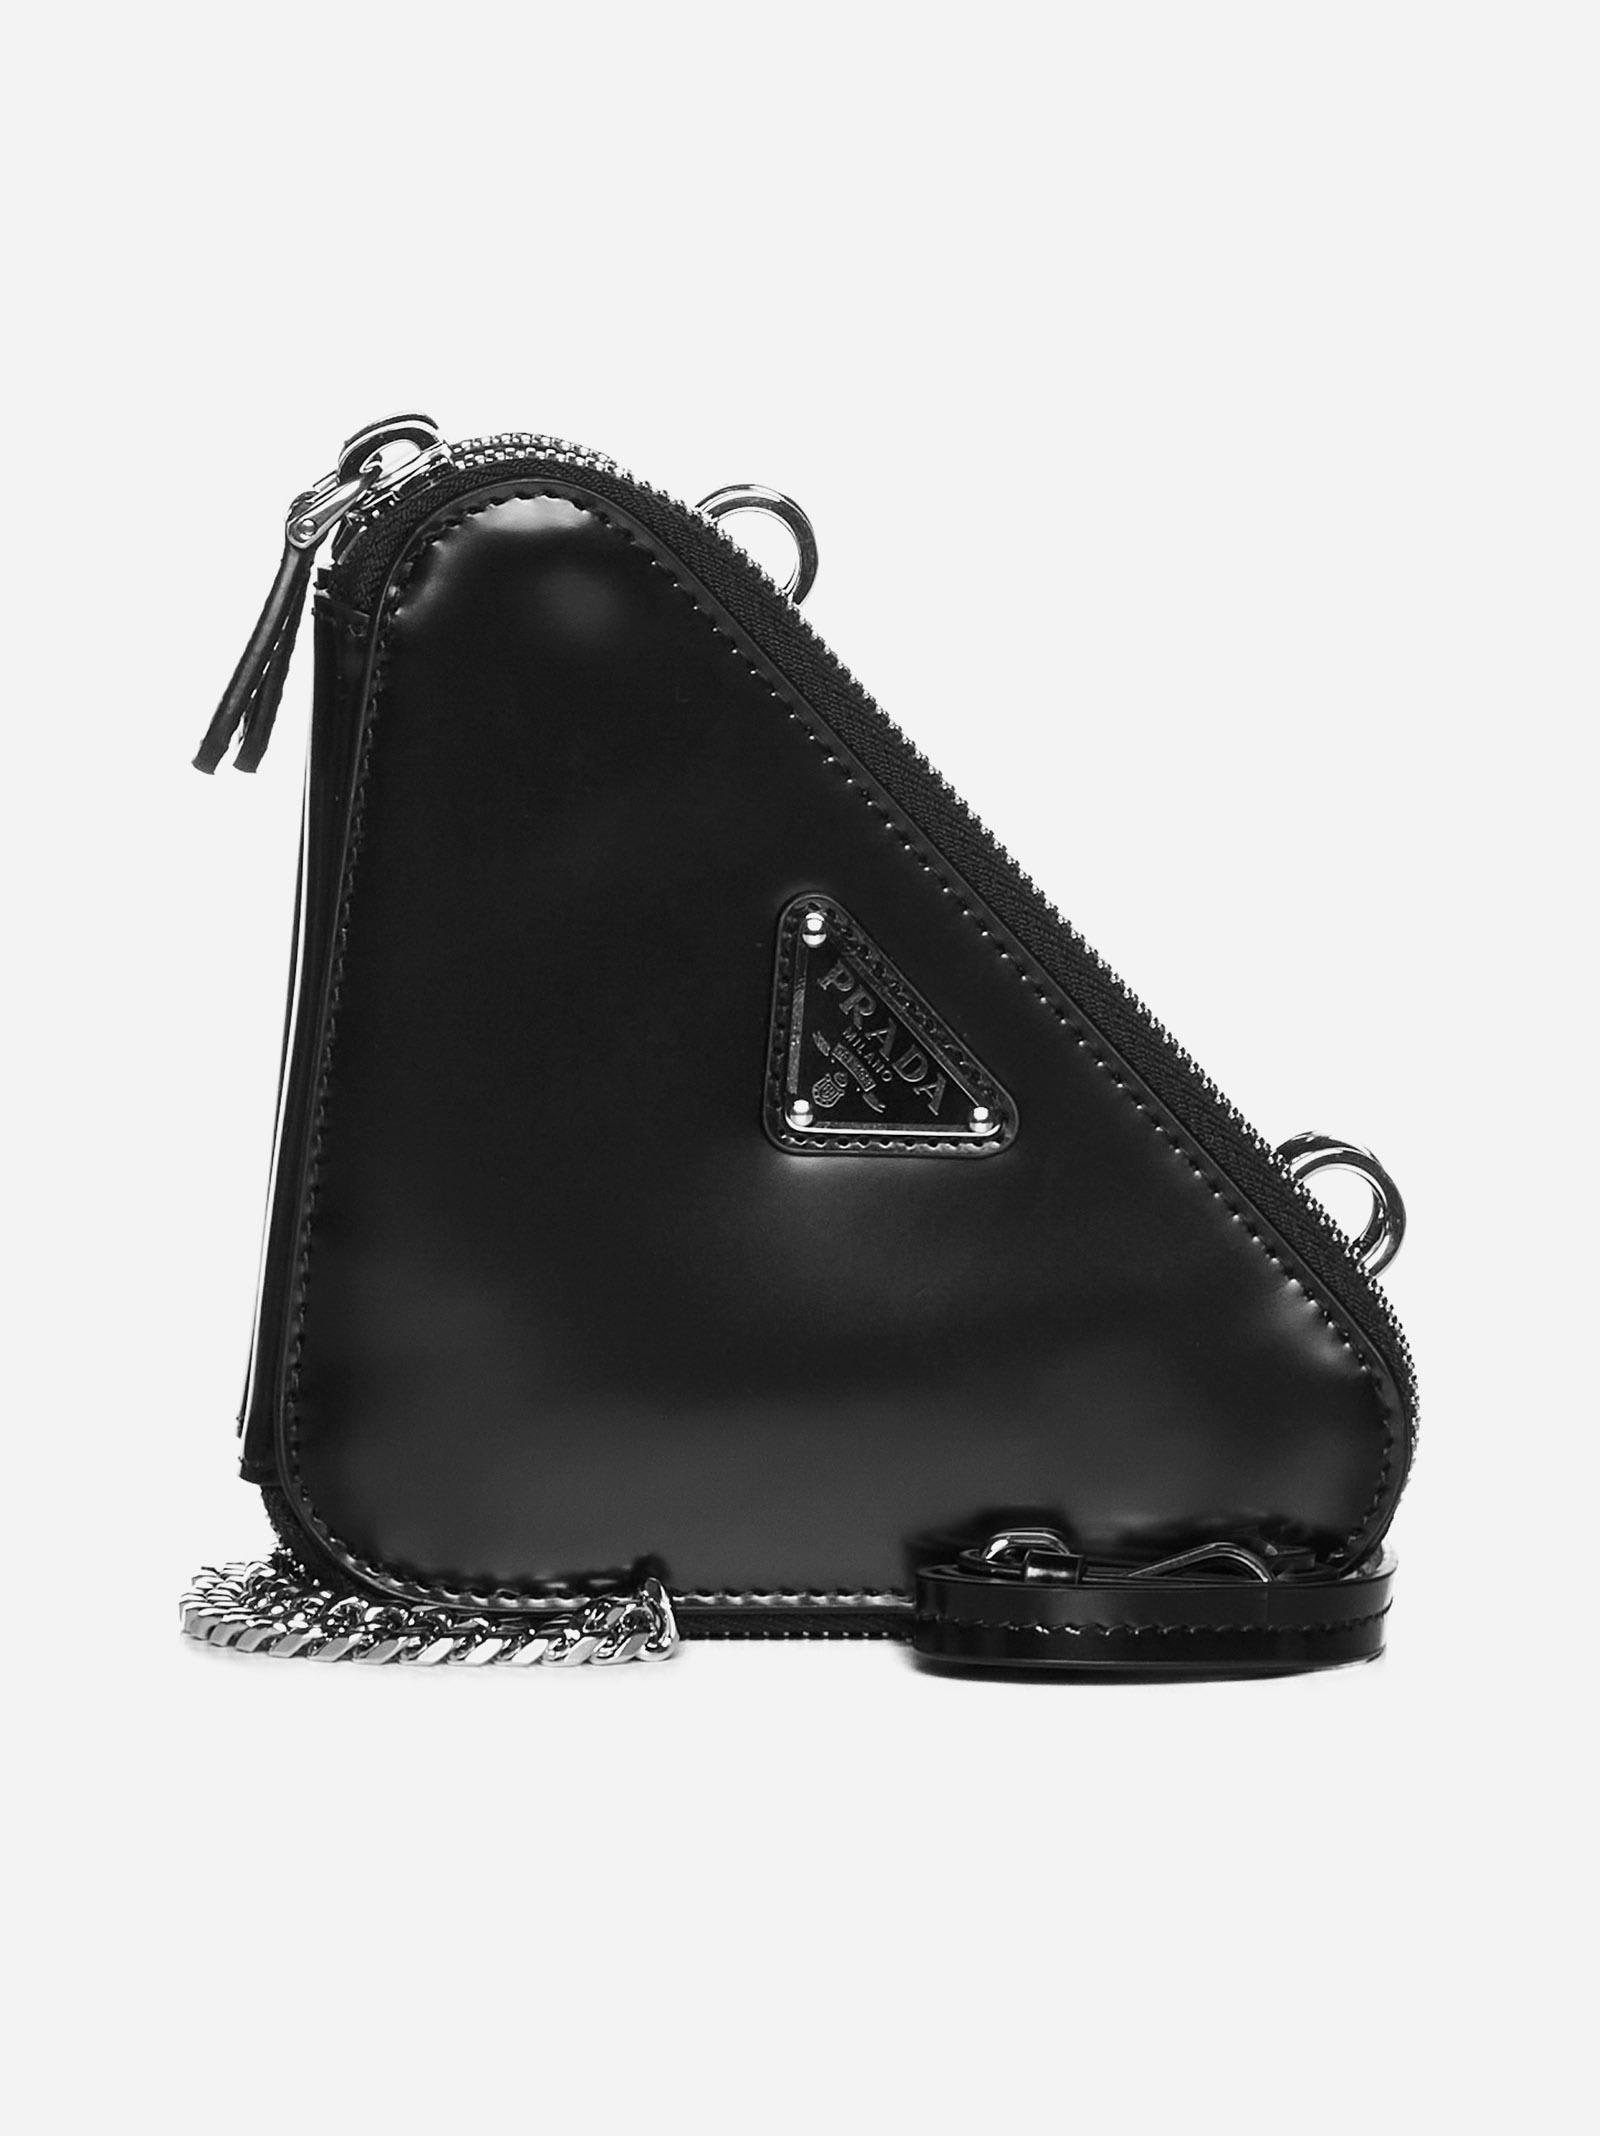 Prada Black Triangle bag